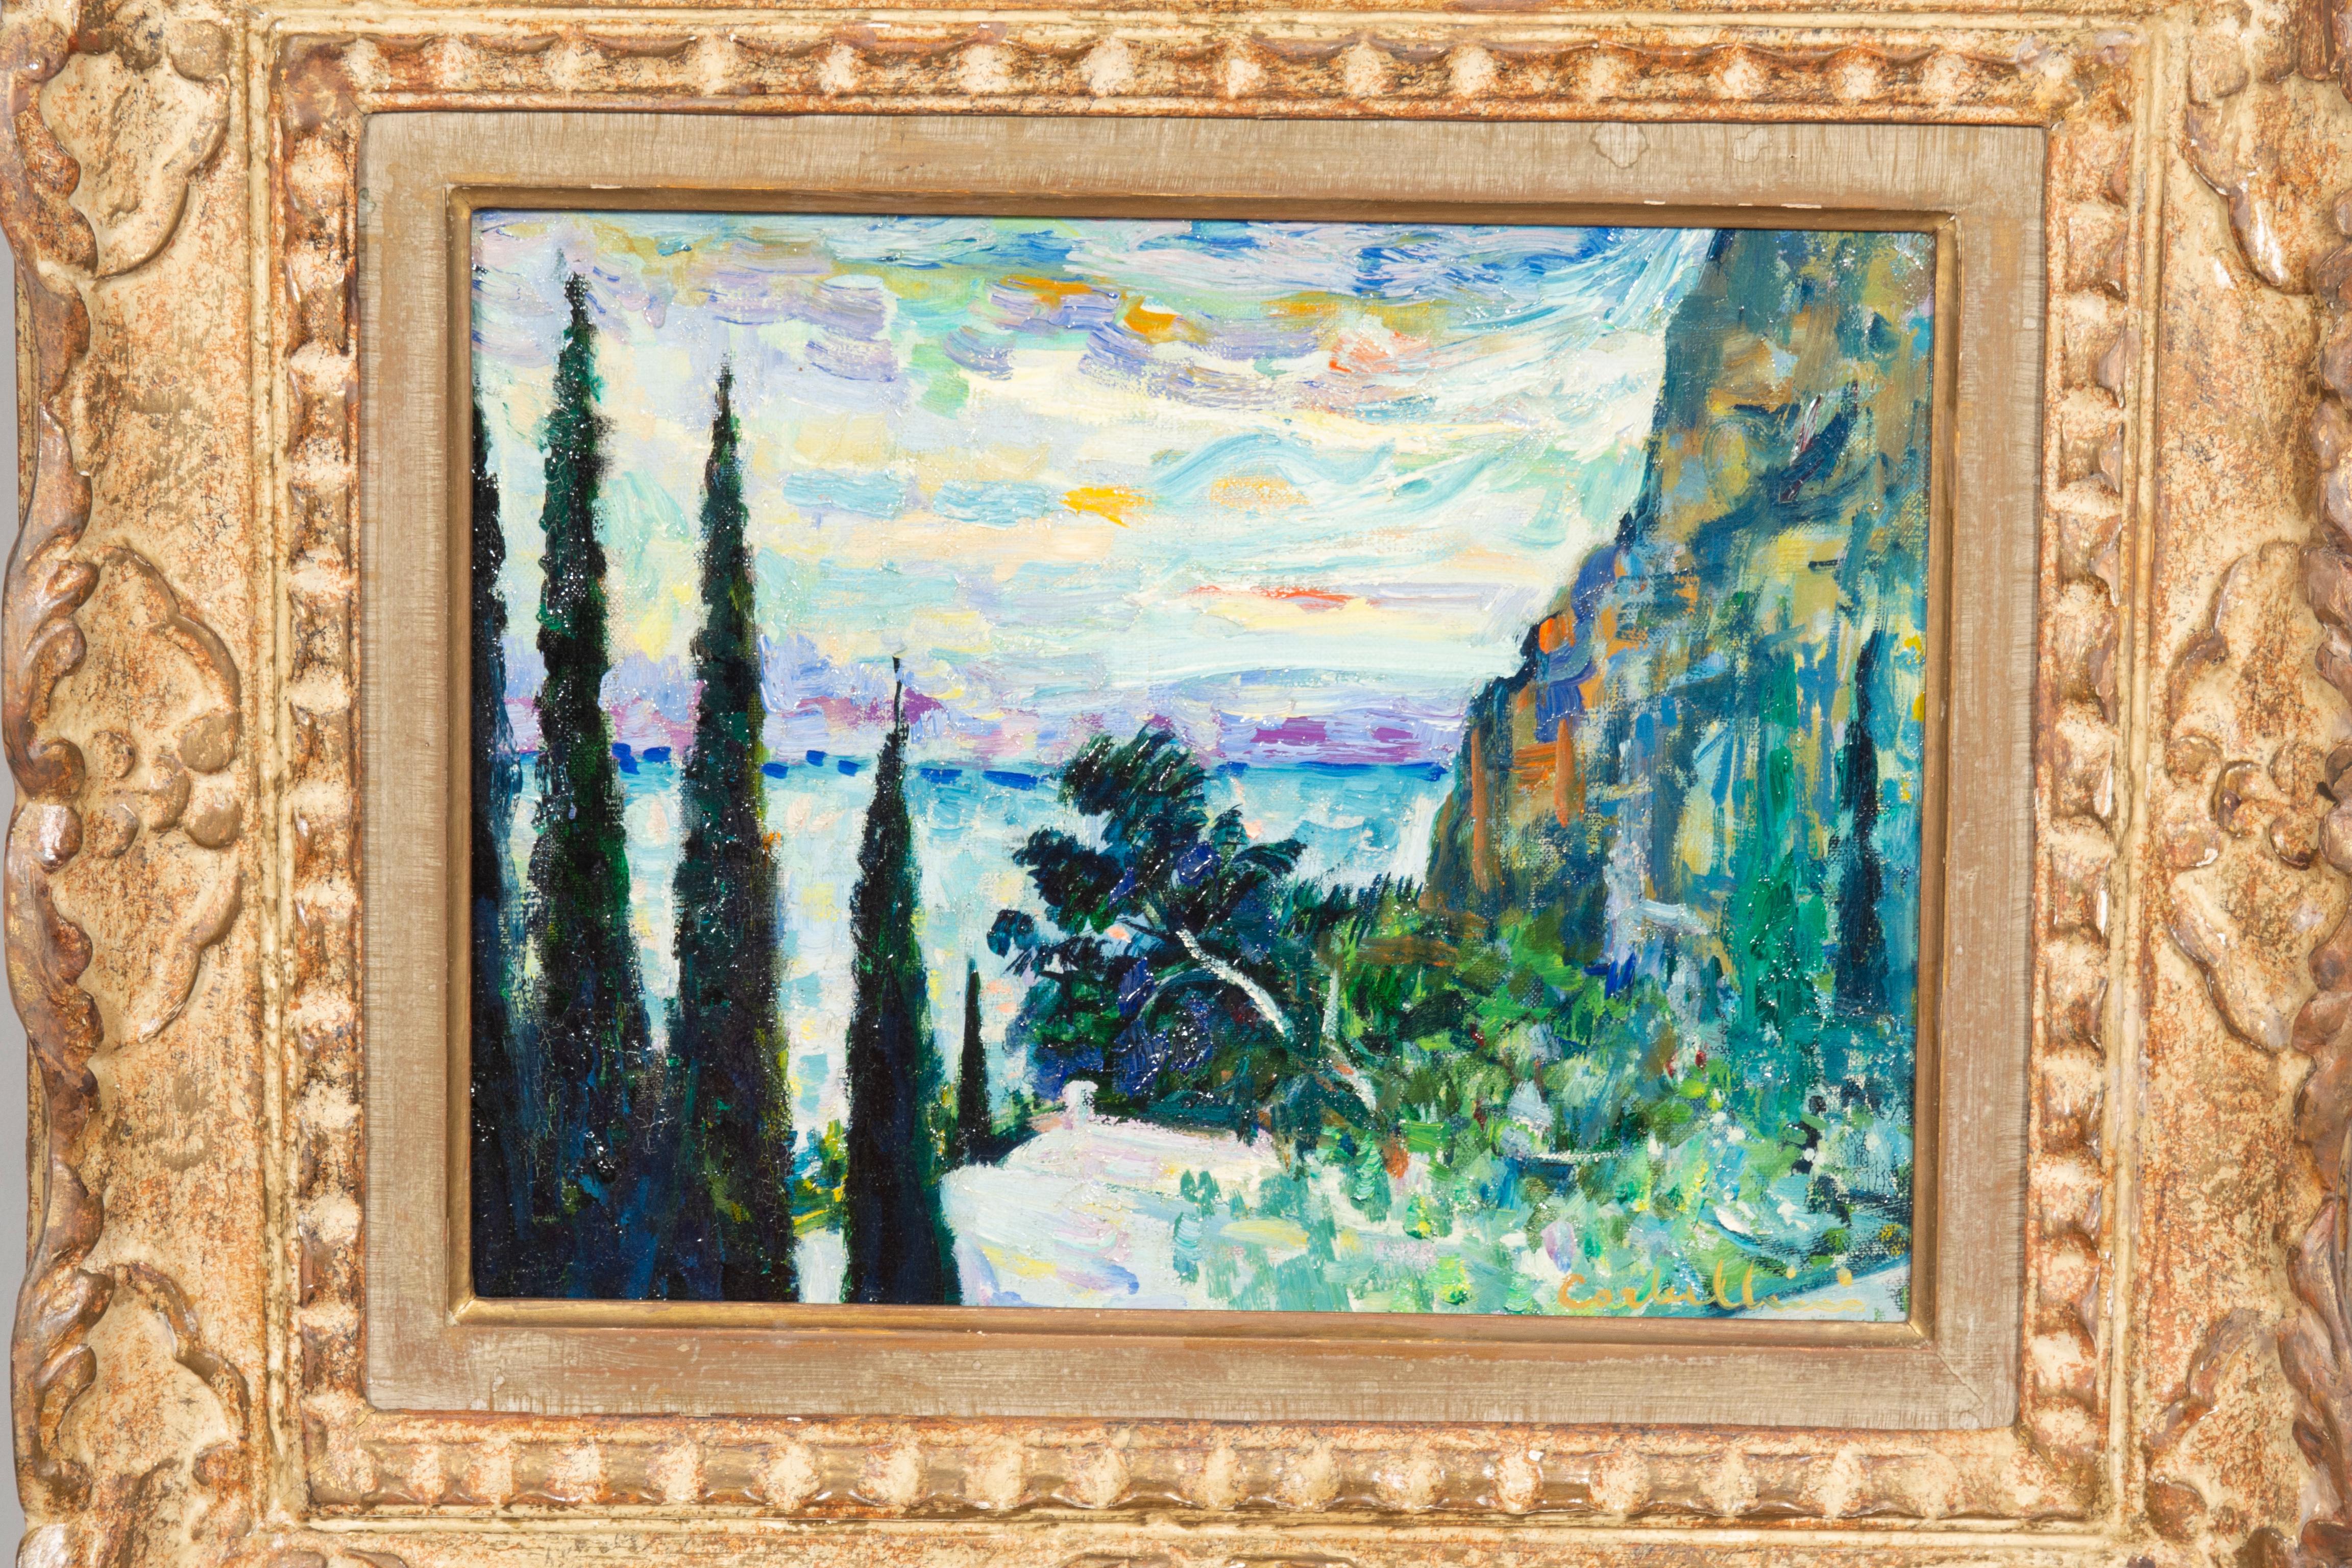 Né en Italie et ayant vécu principalement en France. Il était un peintre post-impressionniste italien. Il expose à la Société des Artistes Inde'pendants, puis au Salon des Tuileries et au Salon d' Automne. Il a passé une grande partie de sa carrière